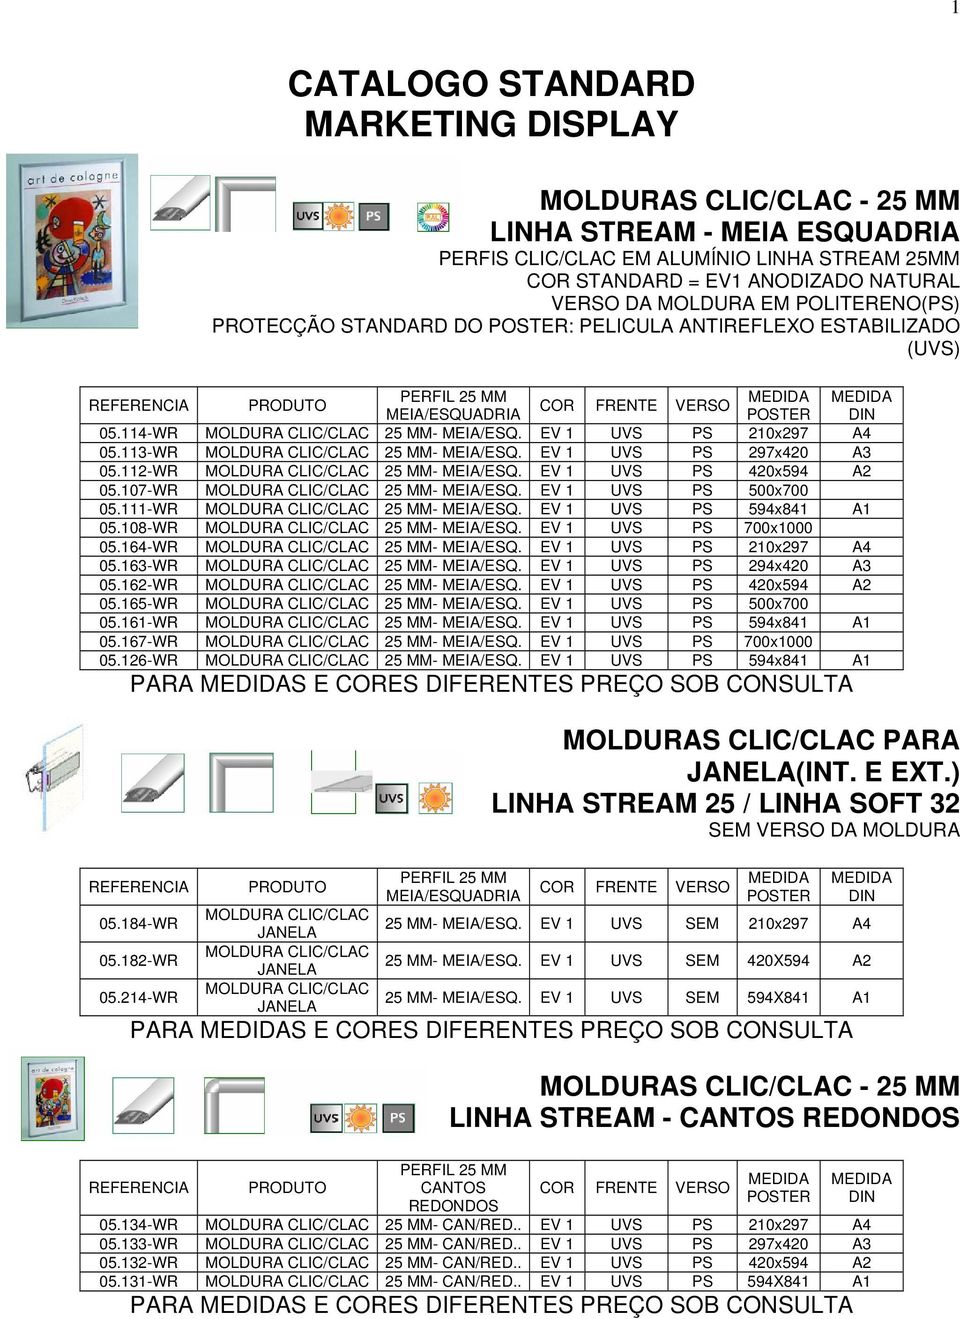 V 1 PS 297x420 A3 05.112-WR MOLDURA CLIC/CLAC 25 MM- MIA/SQ. V 1 PS 420x594 A2 05.107-WR MOLDURA CLIC/CLAC 25 MM- MIA/SQ. V 1 PS 500x700 05.111-WR MOLDURA CLIC/CLAC 25 MM- MIA/SQ.